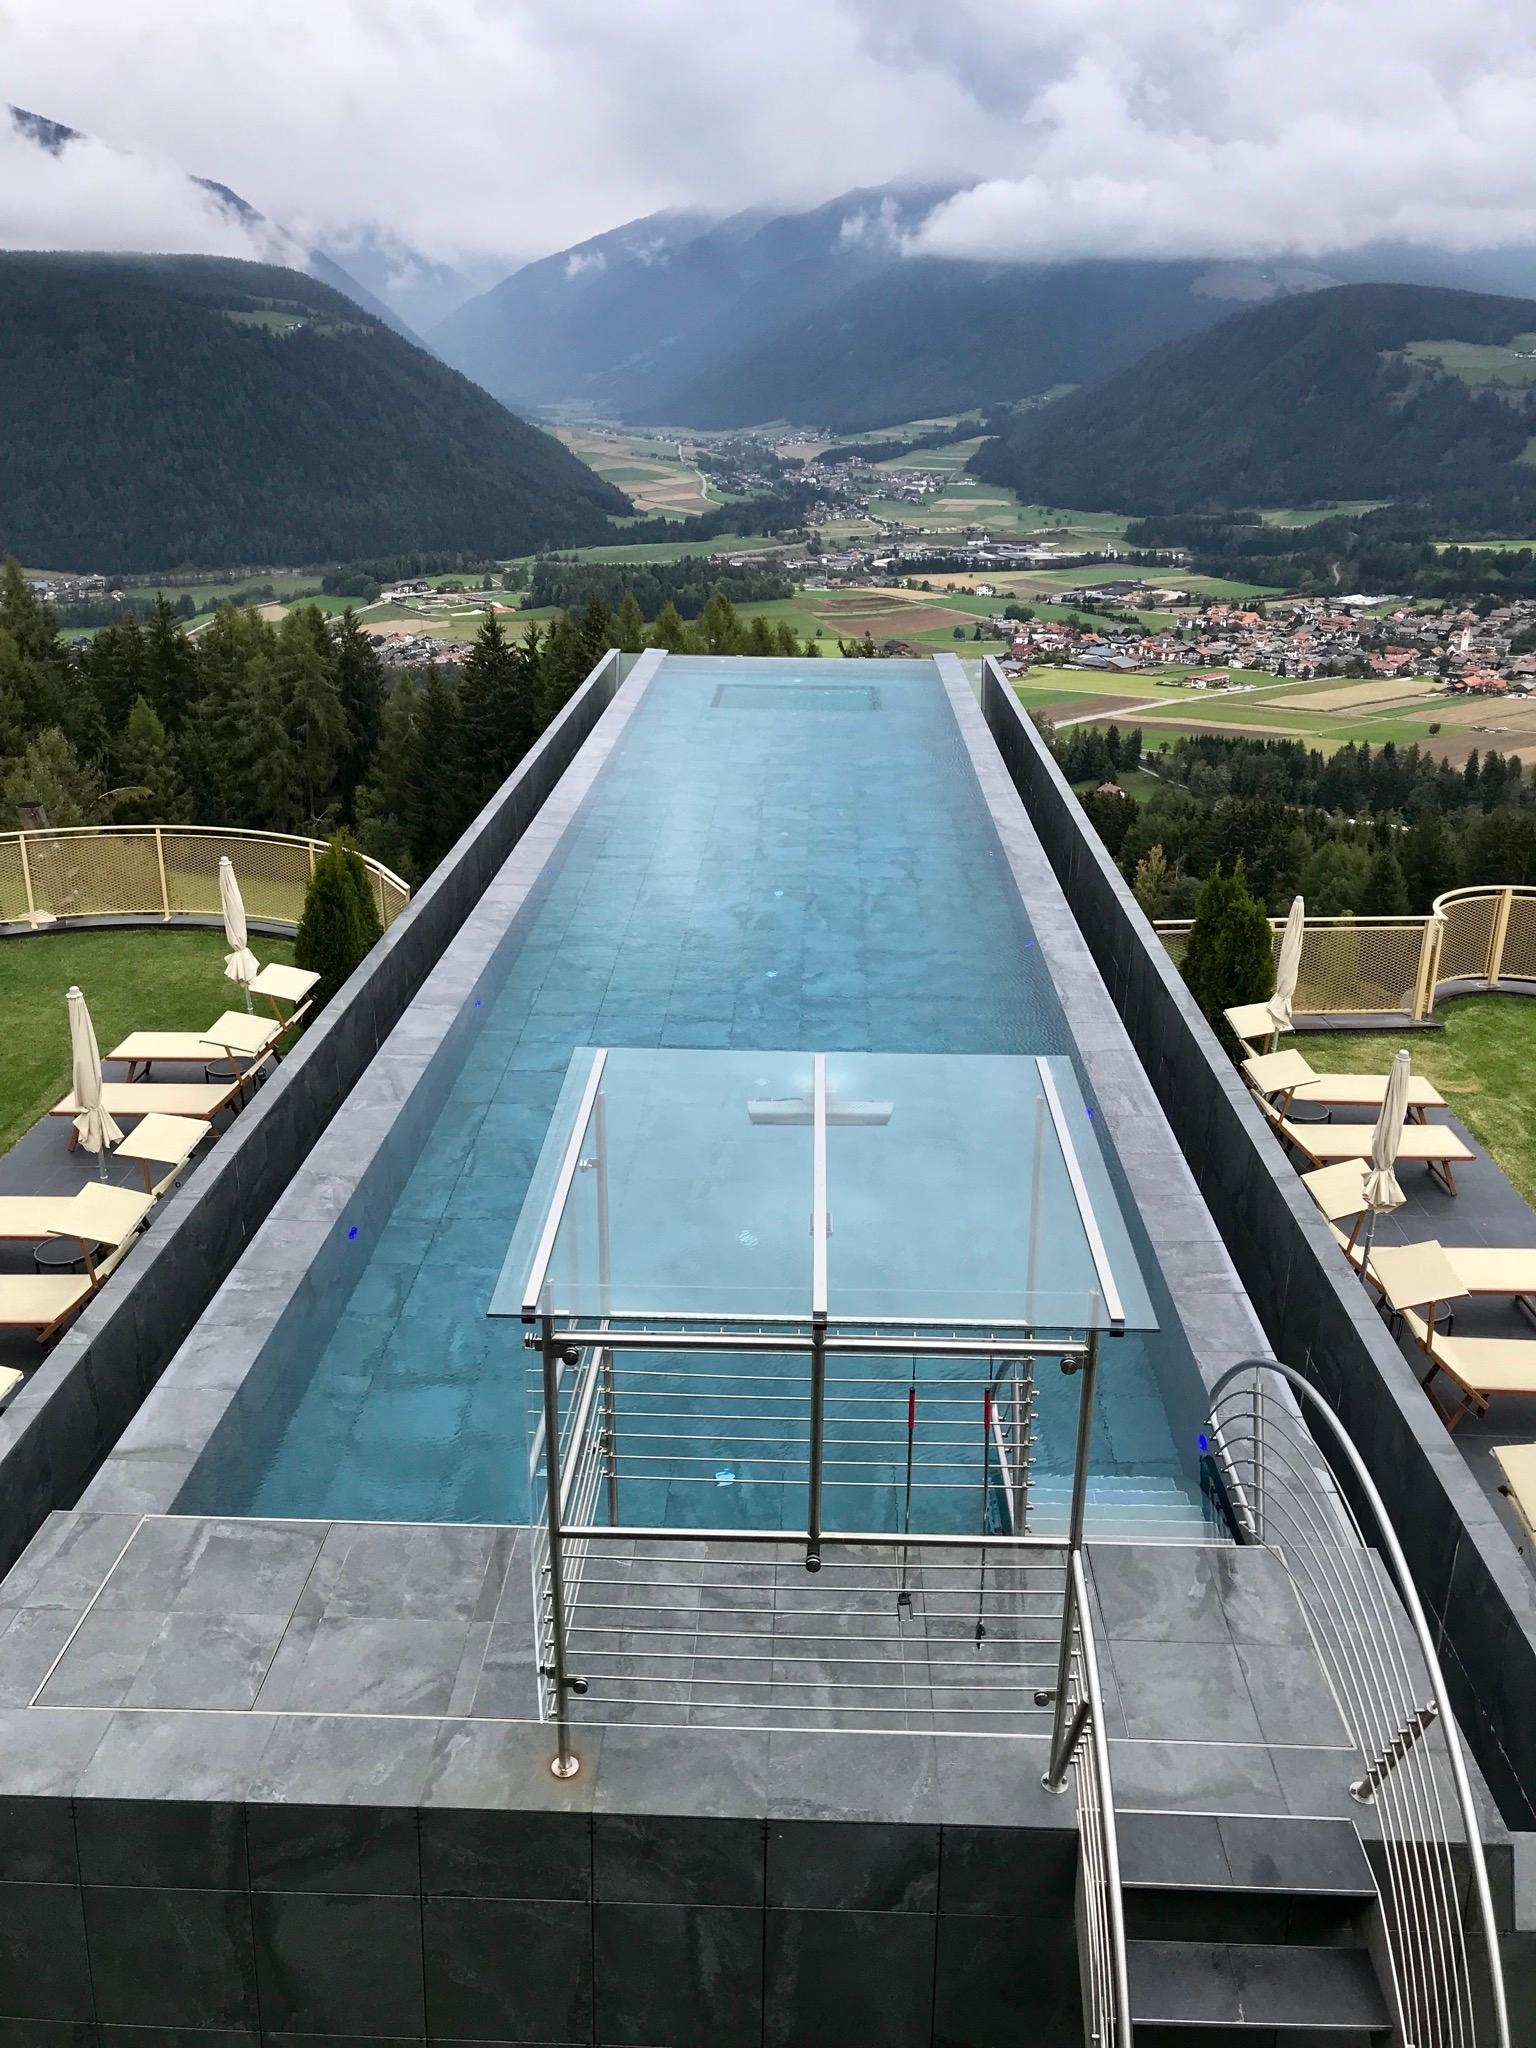 Super Außenpool in in unserem Urlaub in Südtirol... bei dem Ausblick kann man nur entspannen😍 #wellness #travelchallenge